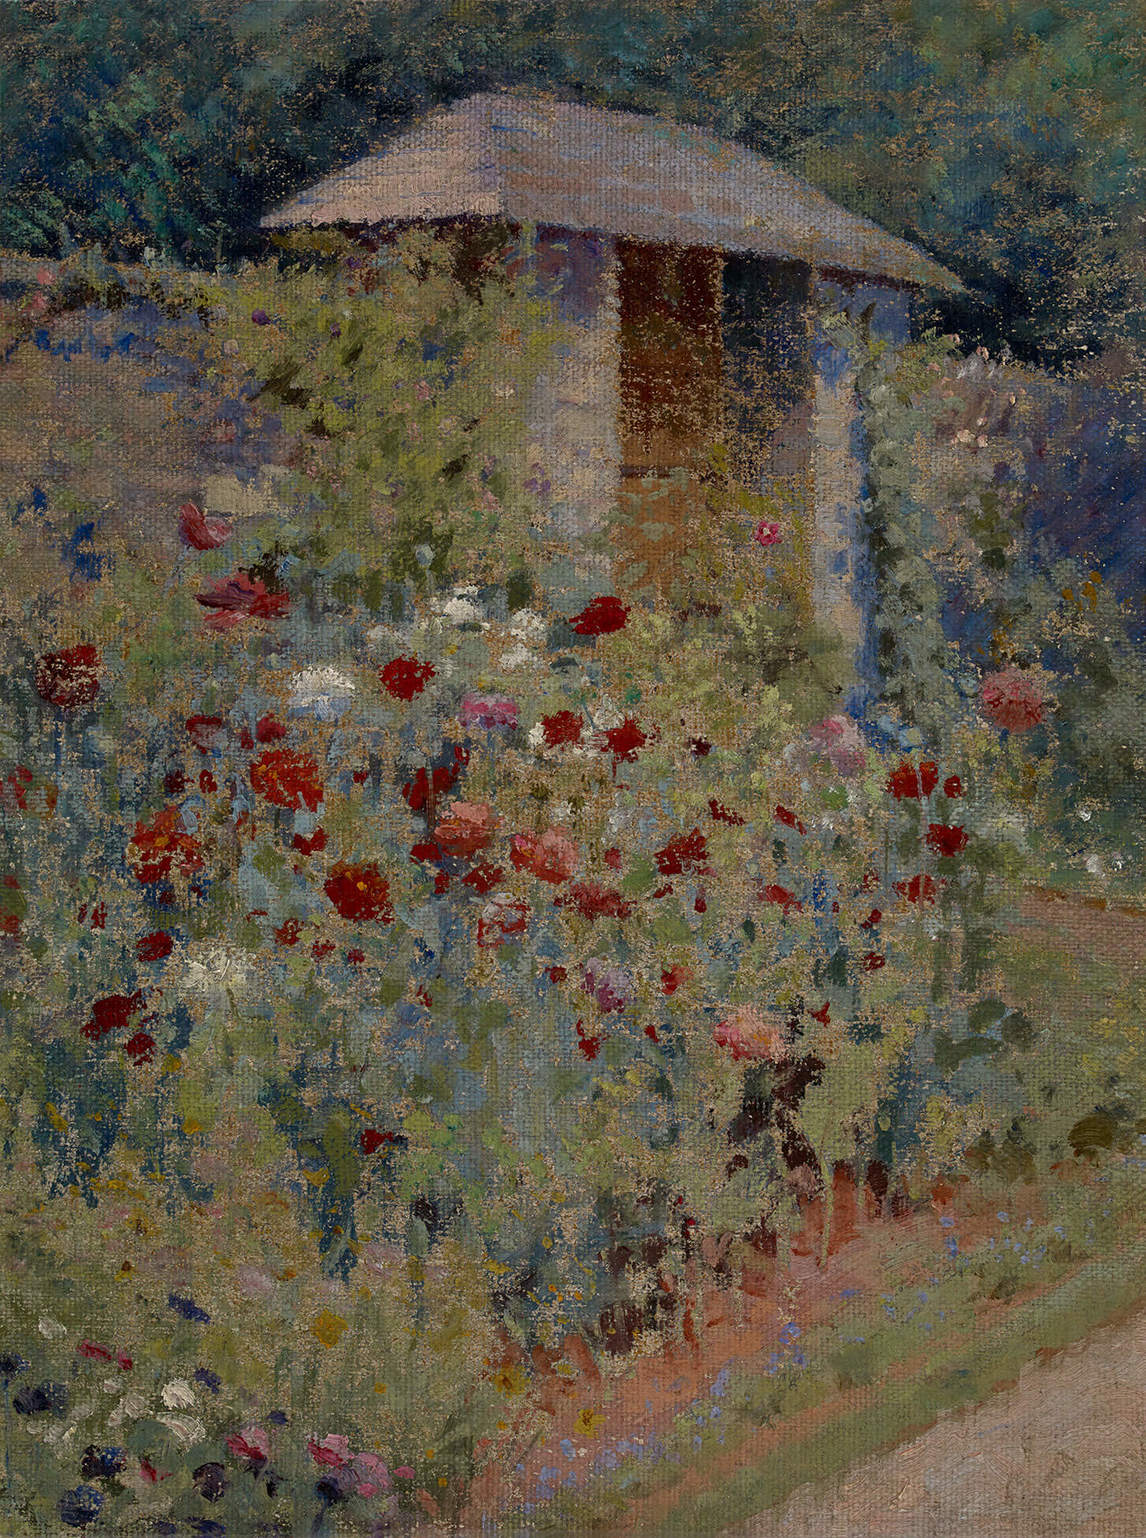 Mary Hiester Reid, A Poppy Garden, n.d.